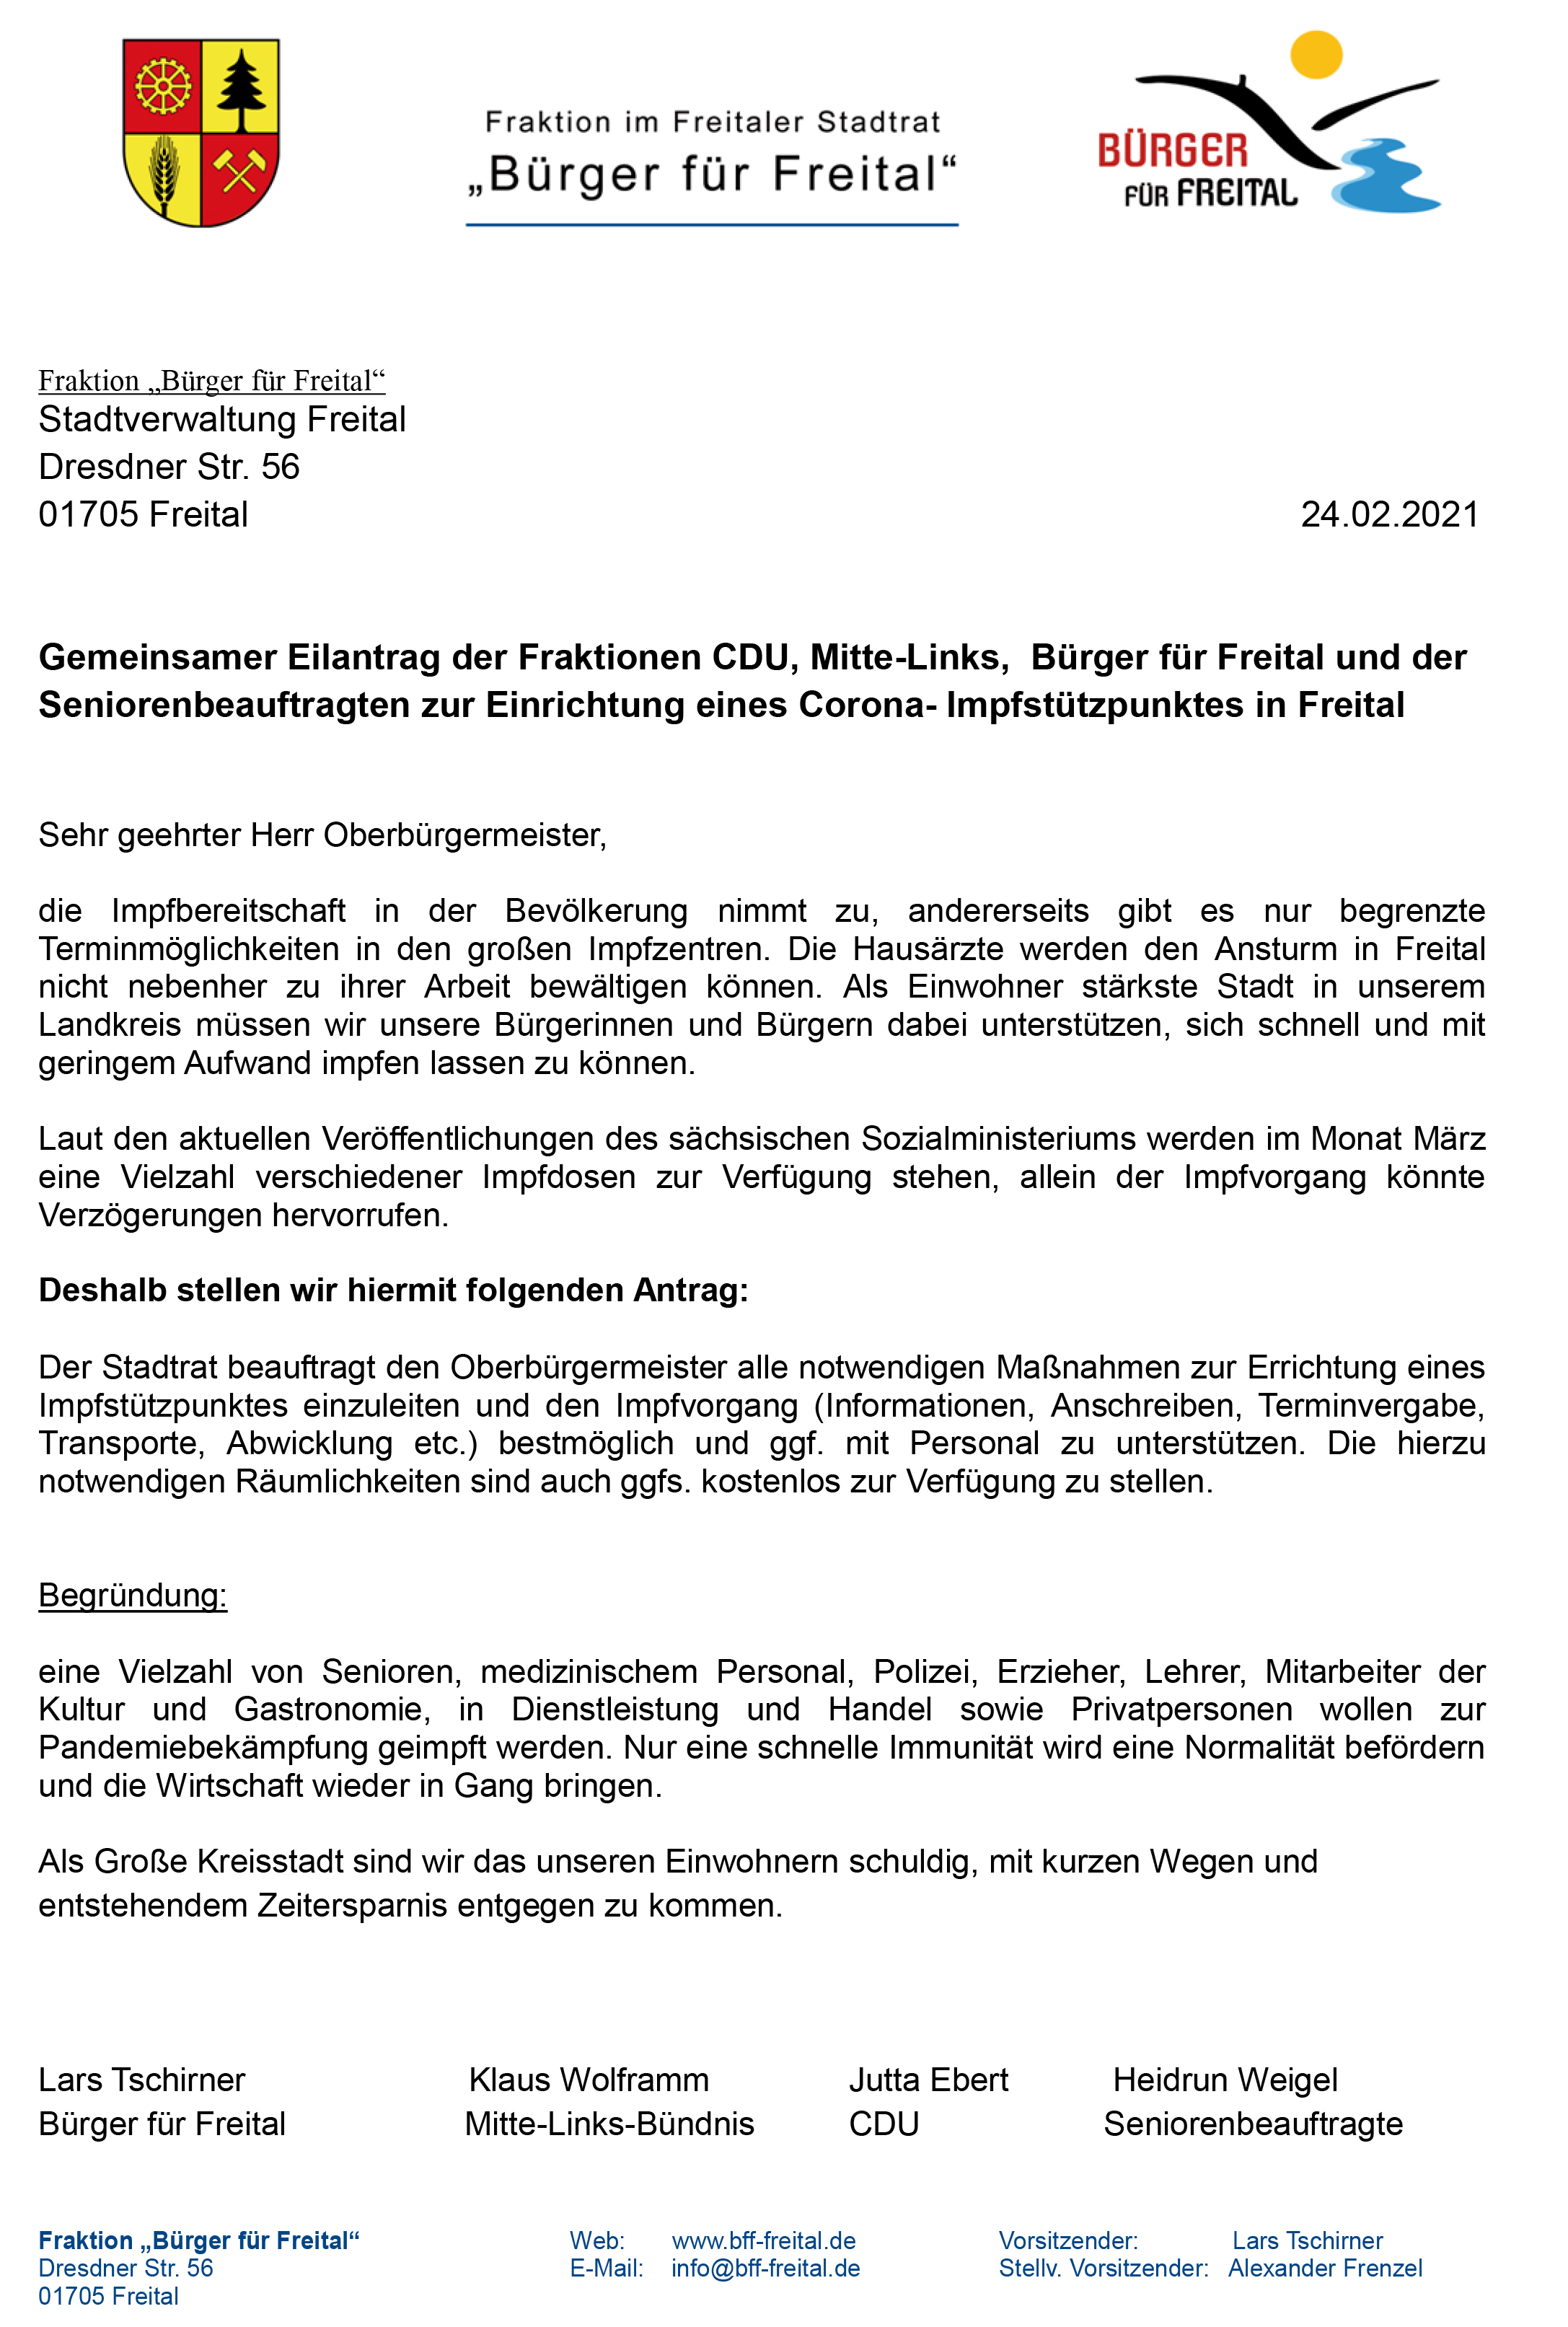 gemeinsamer Antrag zur Errichtung eines Impfstützpunktes in Freital